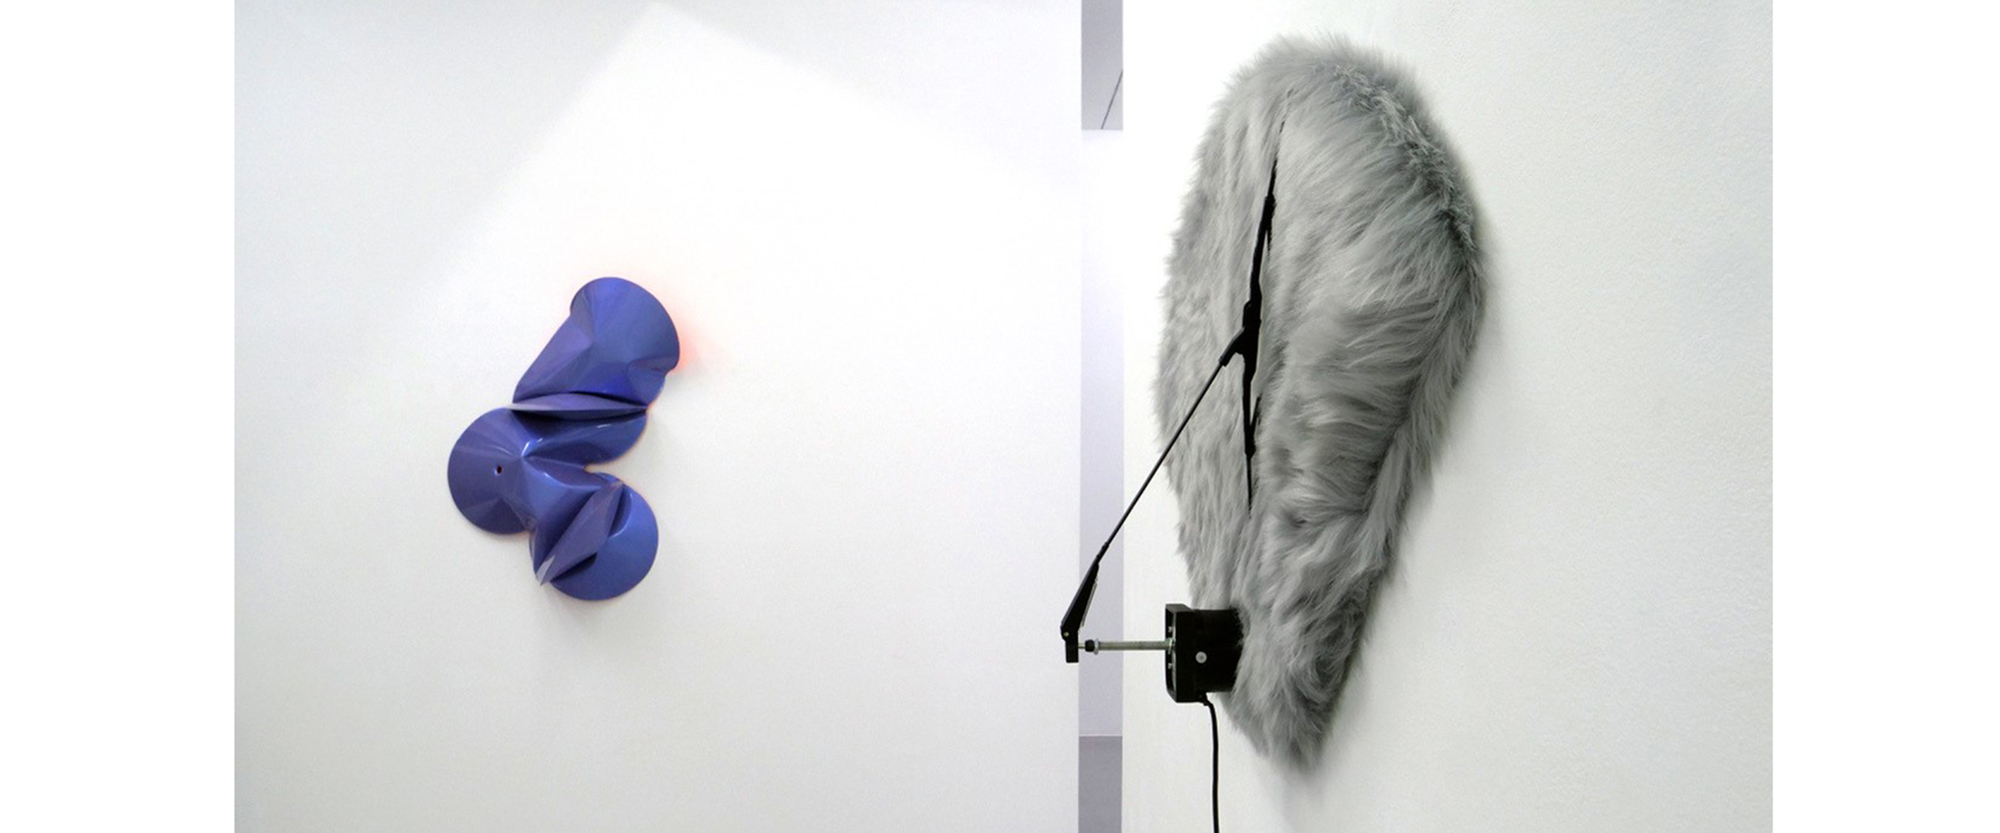 Ausstellungsansicht "Oscillation in Color and Sound", Jeremy Thomas - Pfeifer & Kreutzer, Galerie Renate Bender 2019